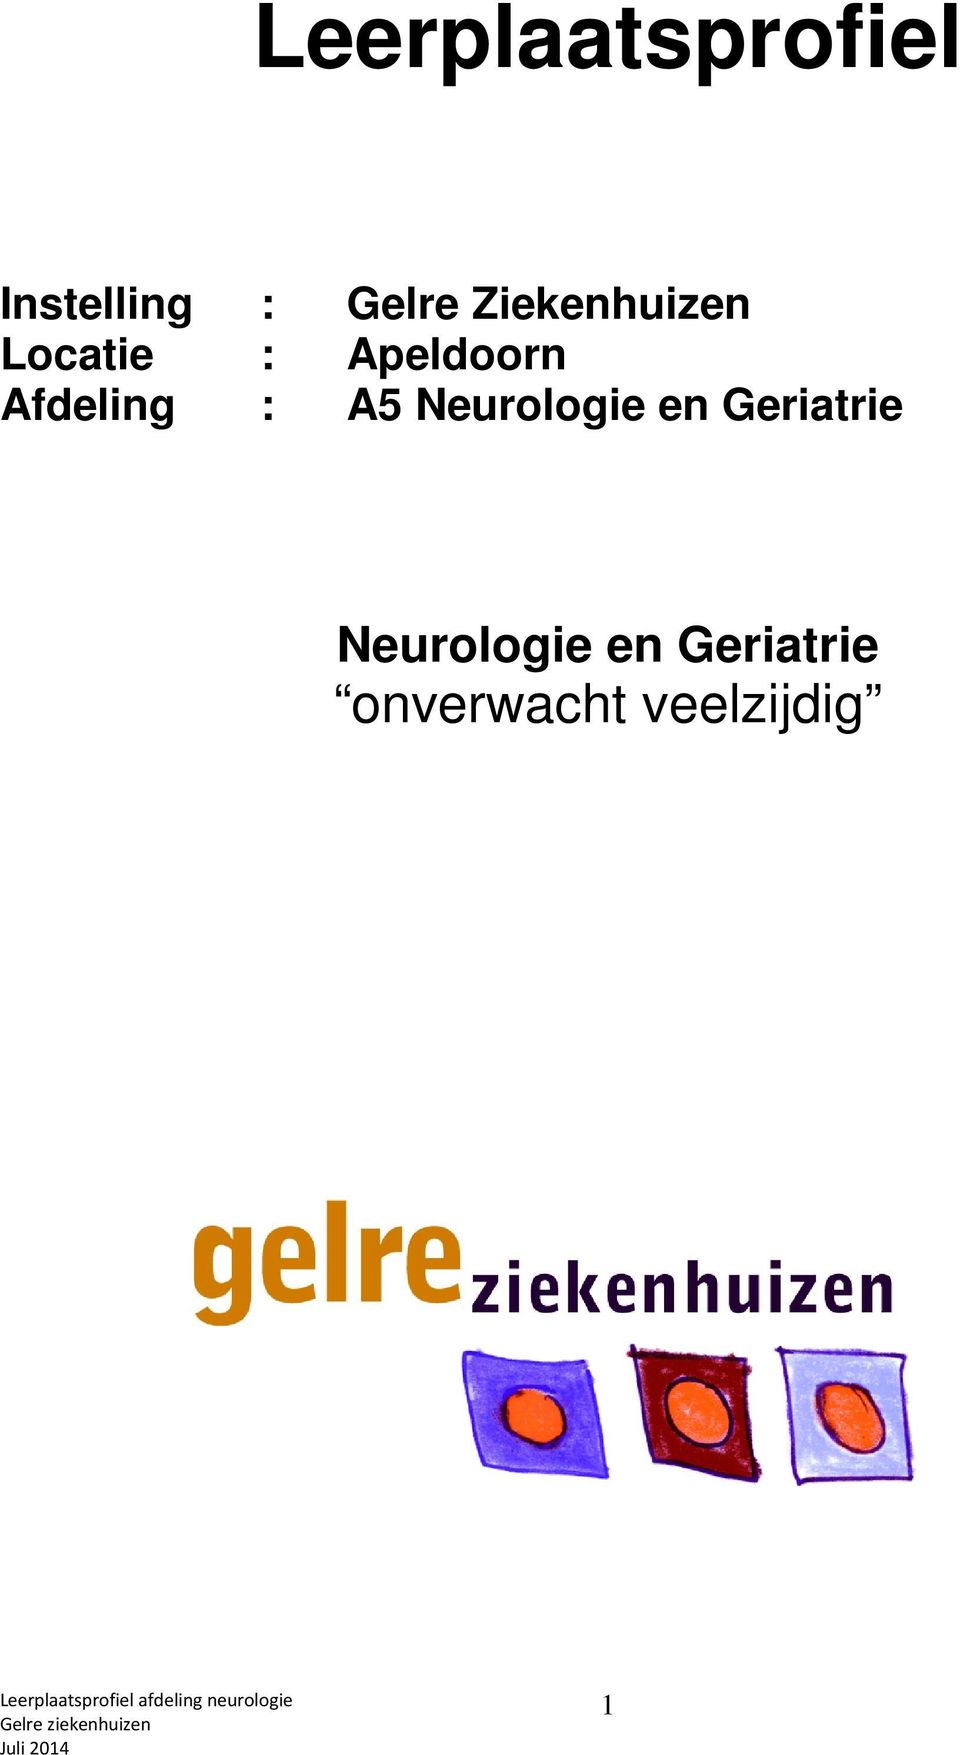 Afdeling : A5 Neurologie en Geriatrie